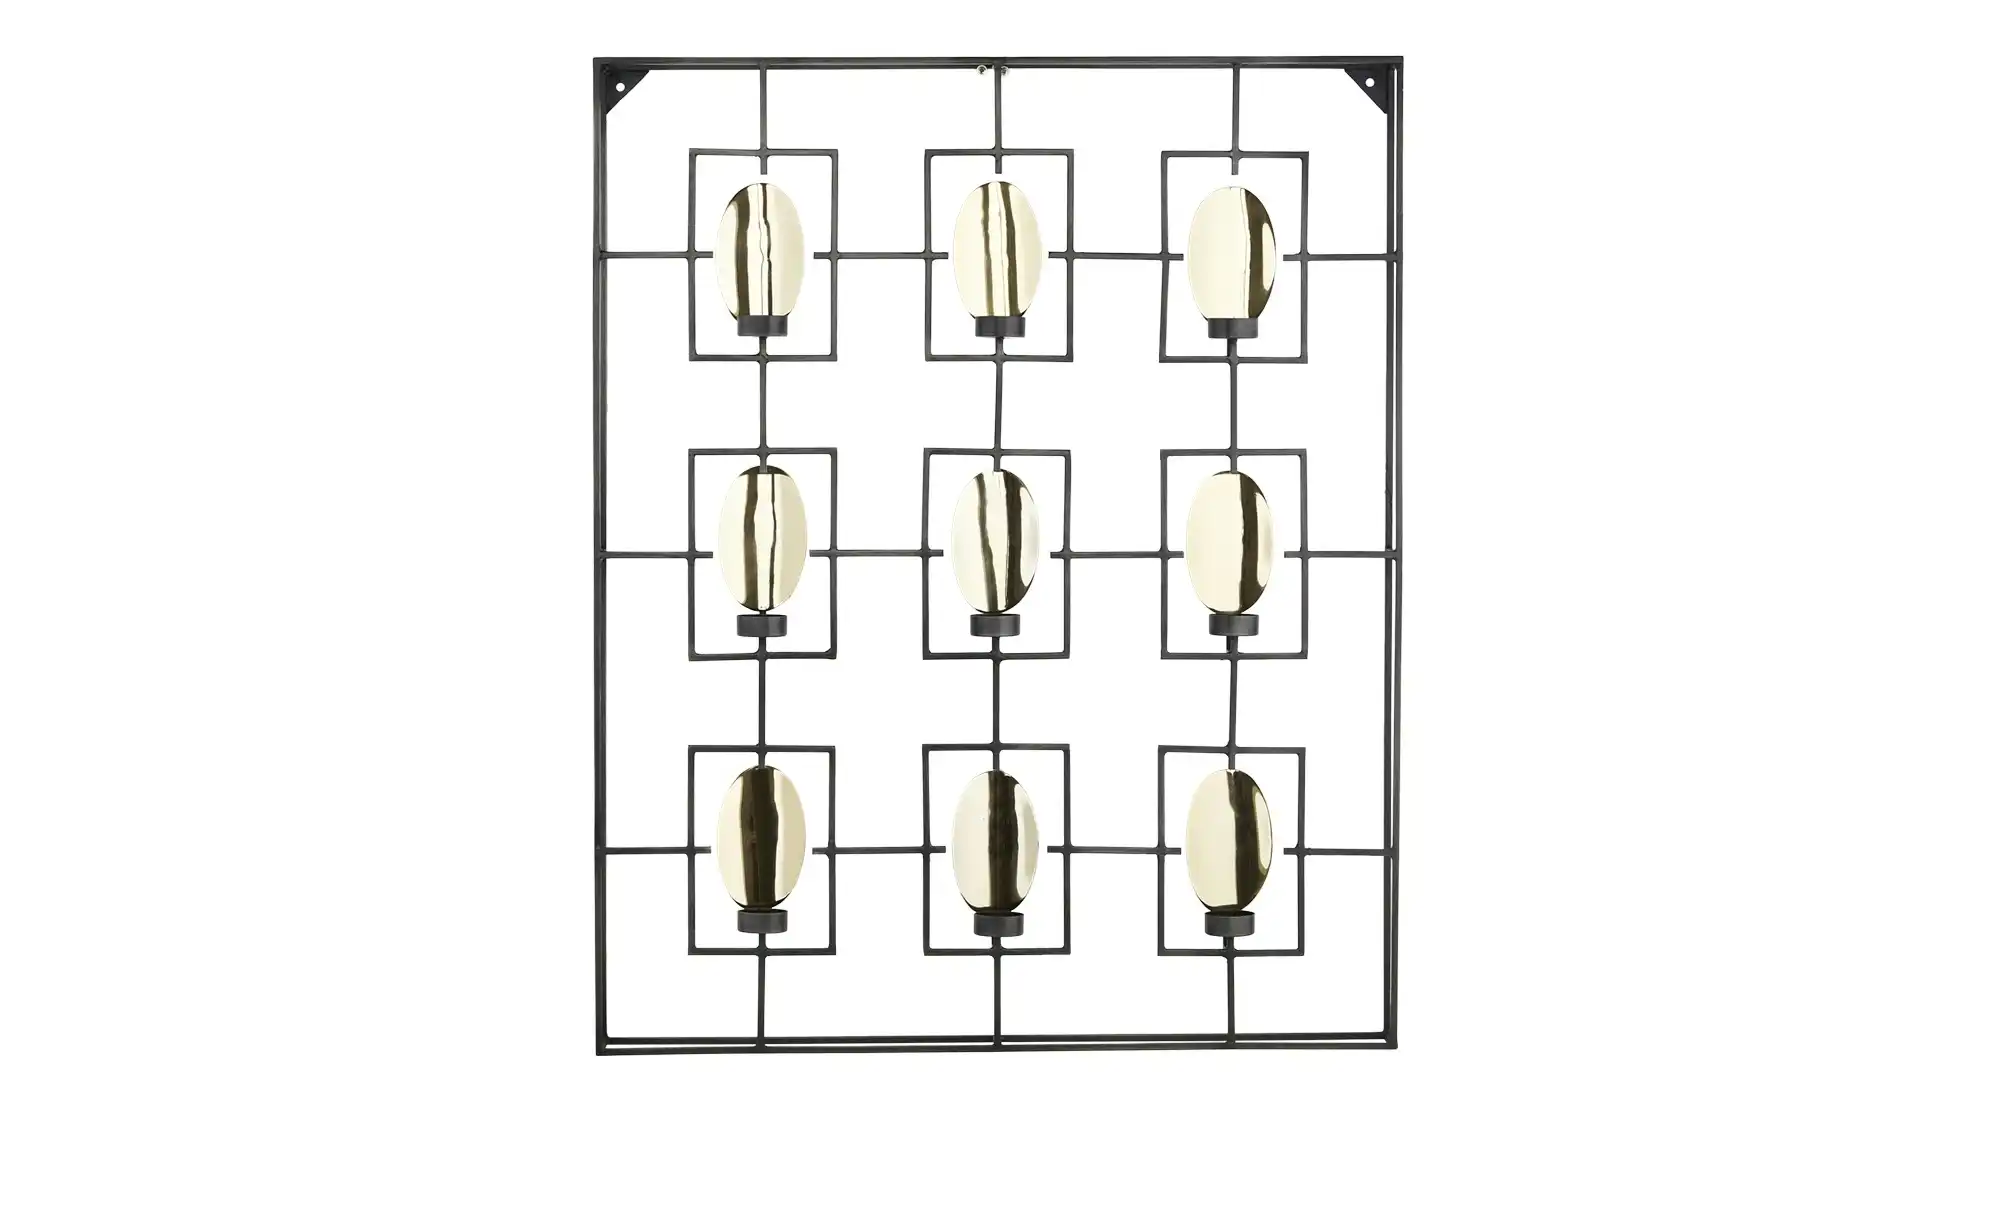 Wanddekoration mit Teelichthalter ¦ schwarz ¦ Metall Accessoires Kerzen Lichter Kerzenständer Höffner  - Onlineshop Möbel Höffner